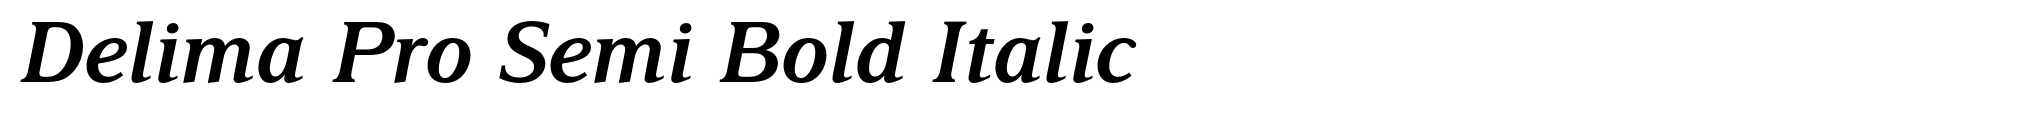 Delima Pro Semi Bold Italic image